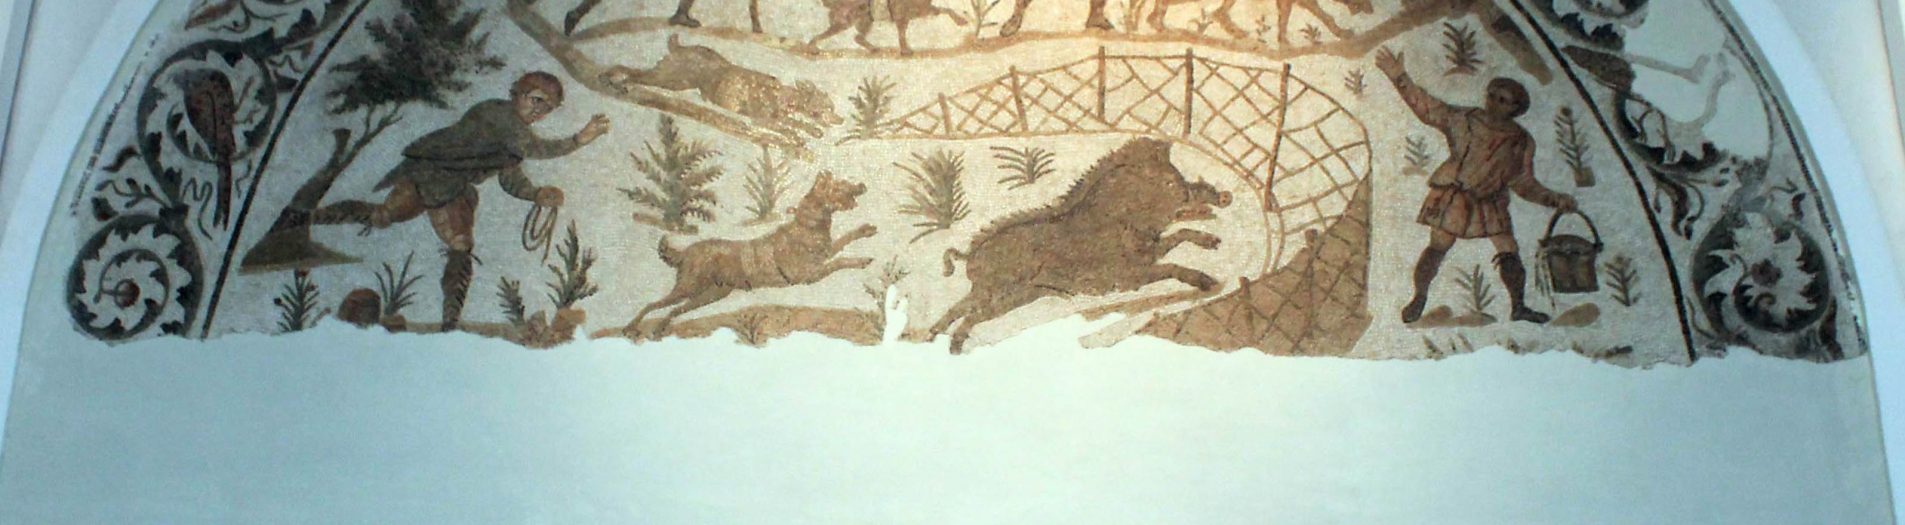 La chasse dans les mosaïques africaines de l'époque romaine en Tunisie